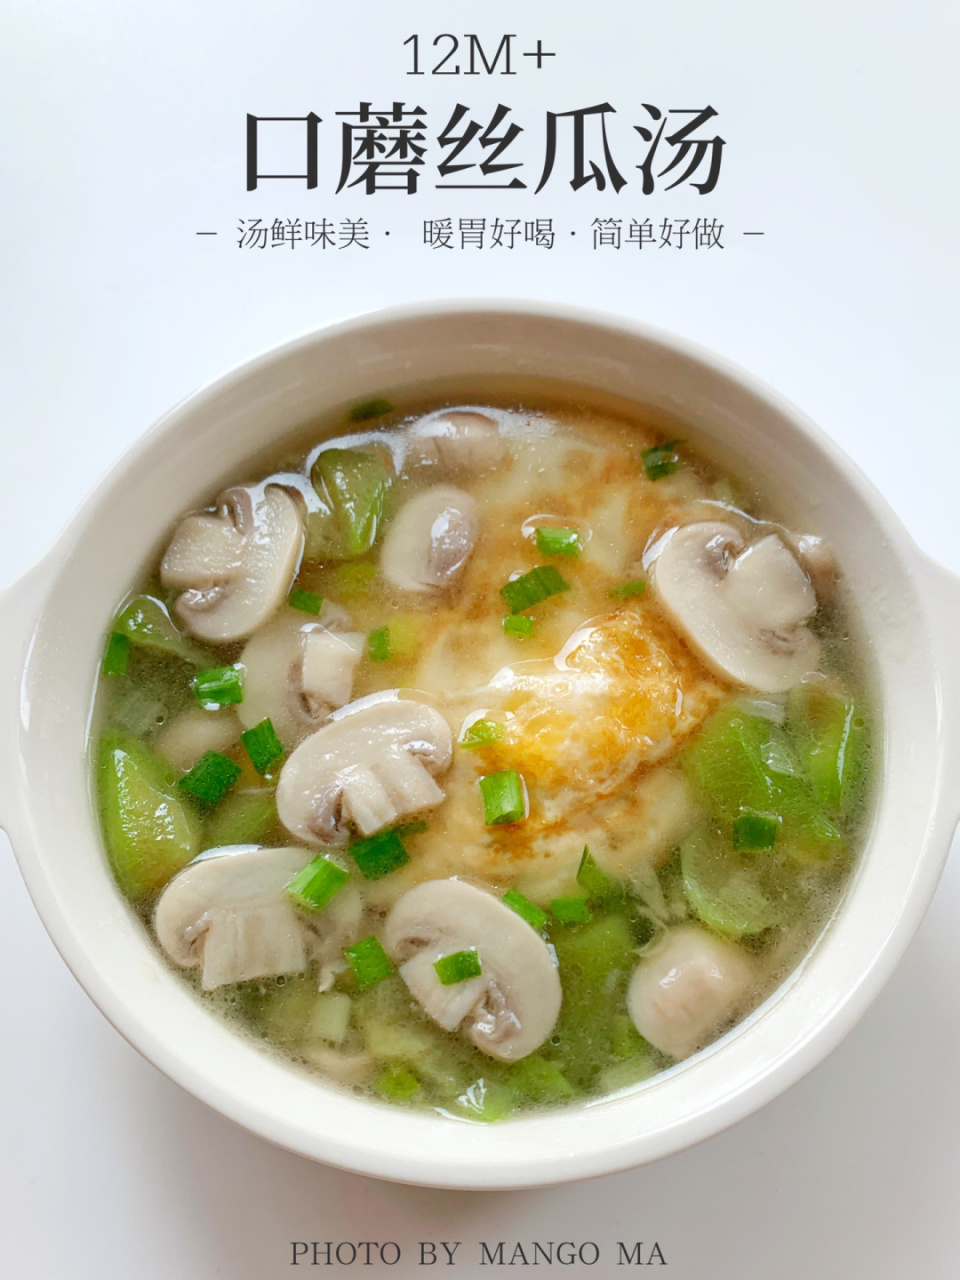 口蘑丝瓜汤·汤鲜味美·暖胃好喝·10分钟搞定 前面分享了口蘑煎蛋汤